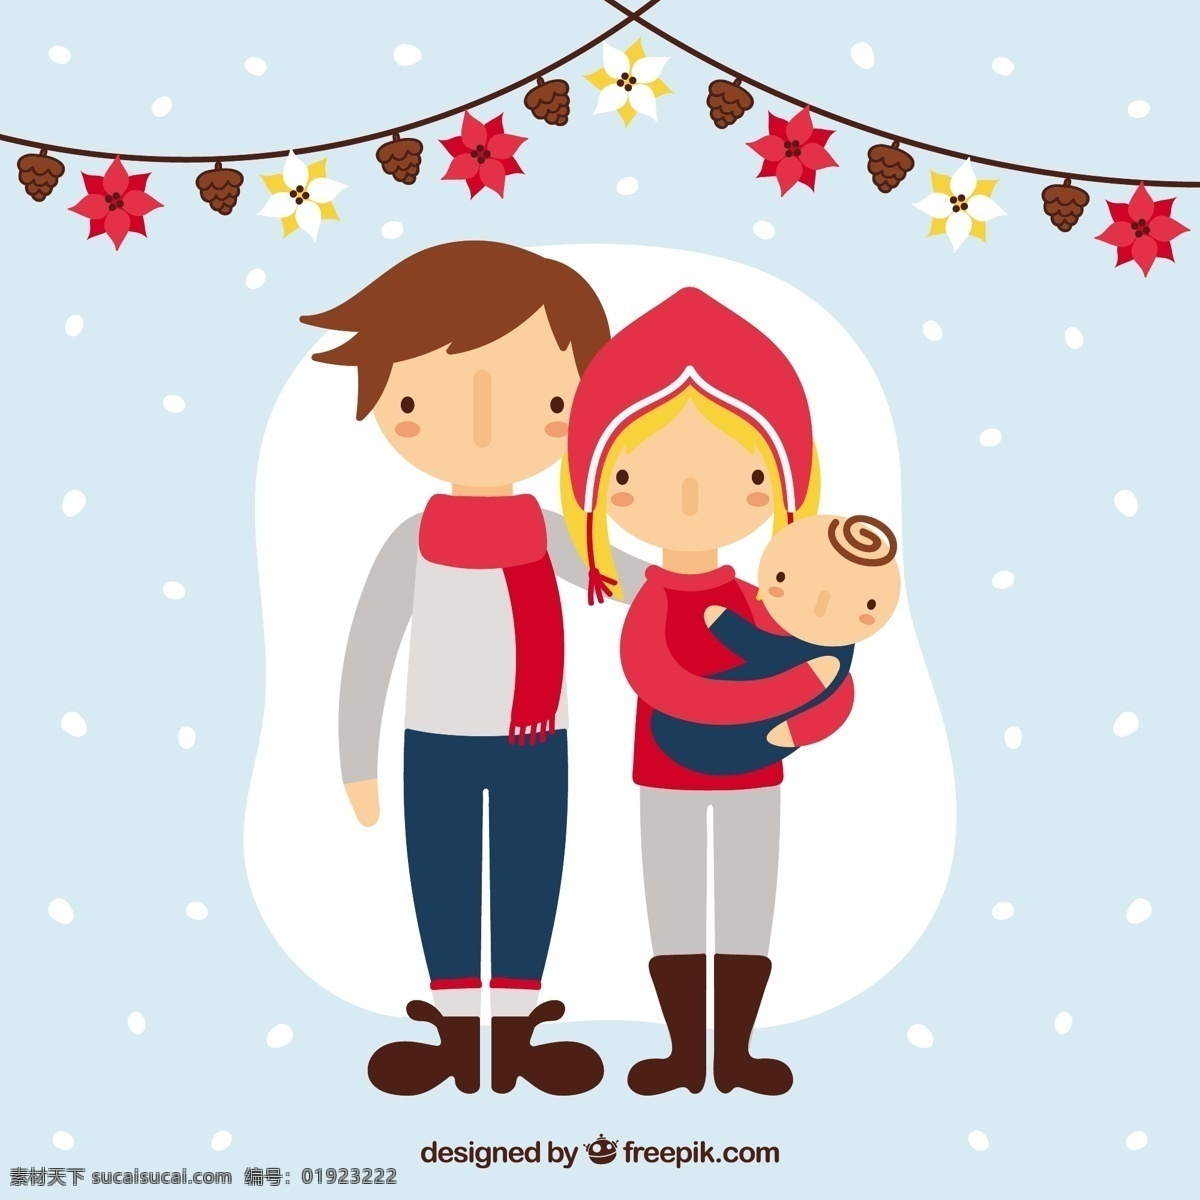 年轻 圣诞 家庭 圣诞节 人 爱情 圣诞快乐 冬天快乐 可爱 庆祝的节日 节日快乐 说明 幸福的家庭 父母关系 季节 年轻人 白色